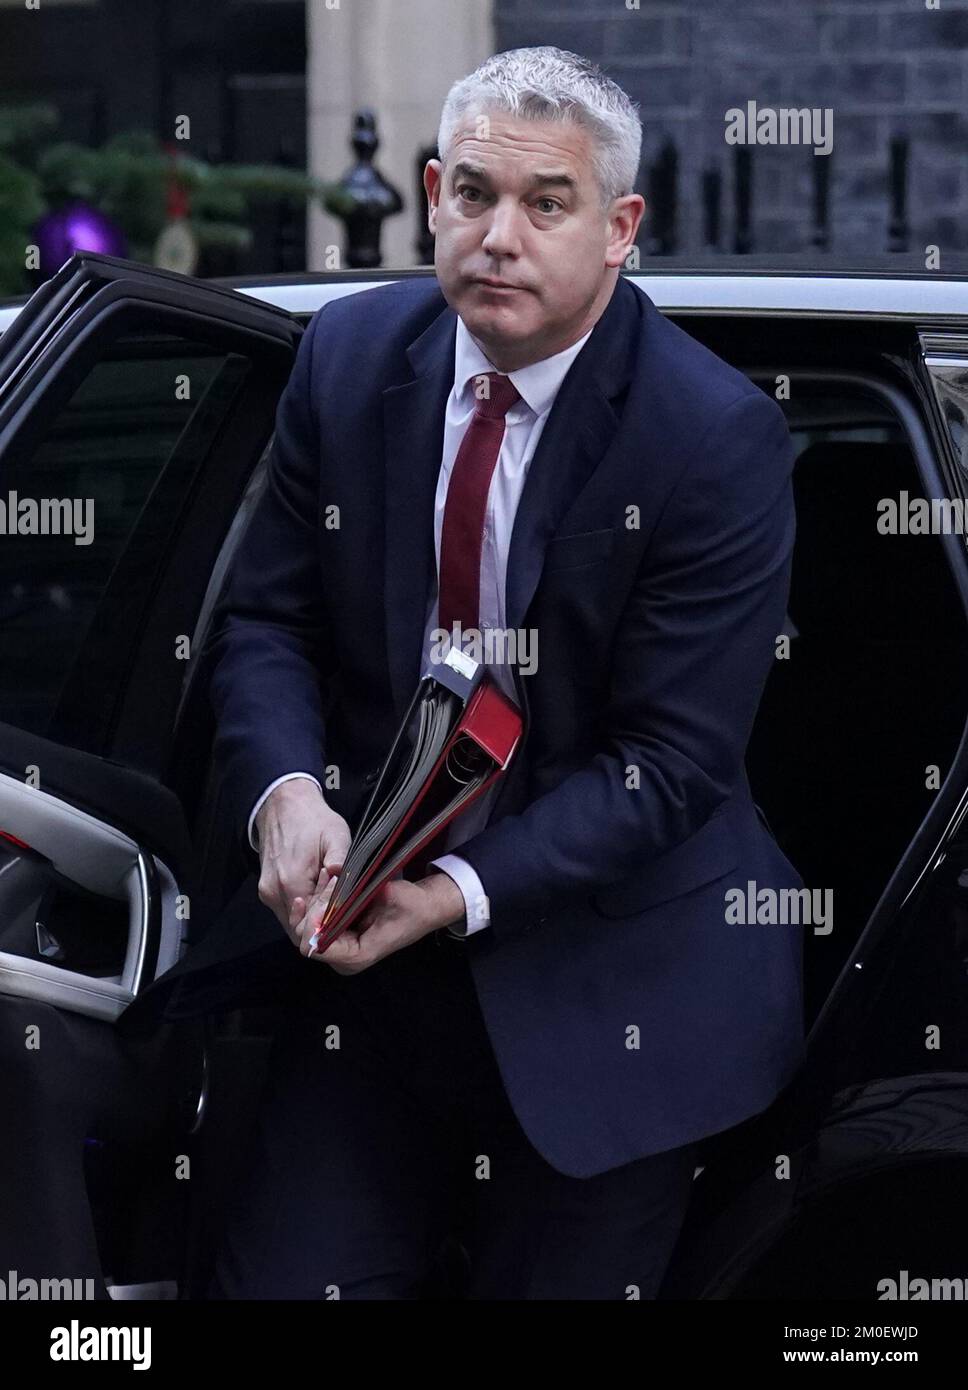 Il Segretario della Salute Steve Barclay arriva a Downing Street, Londra, in vista di una riunione del Gabinetto. Data immagine: Martedì 6 dicembre 2022. Foto Stock